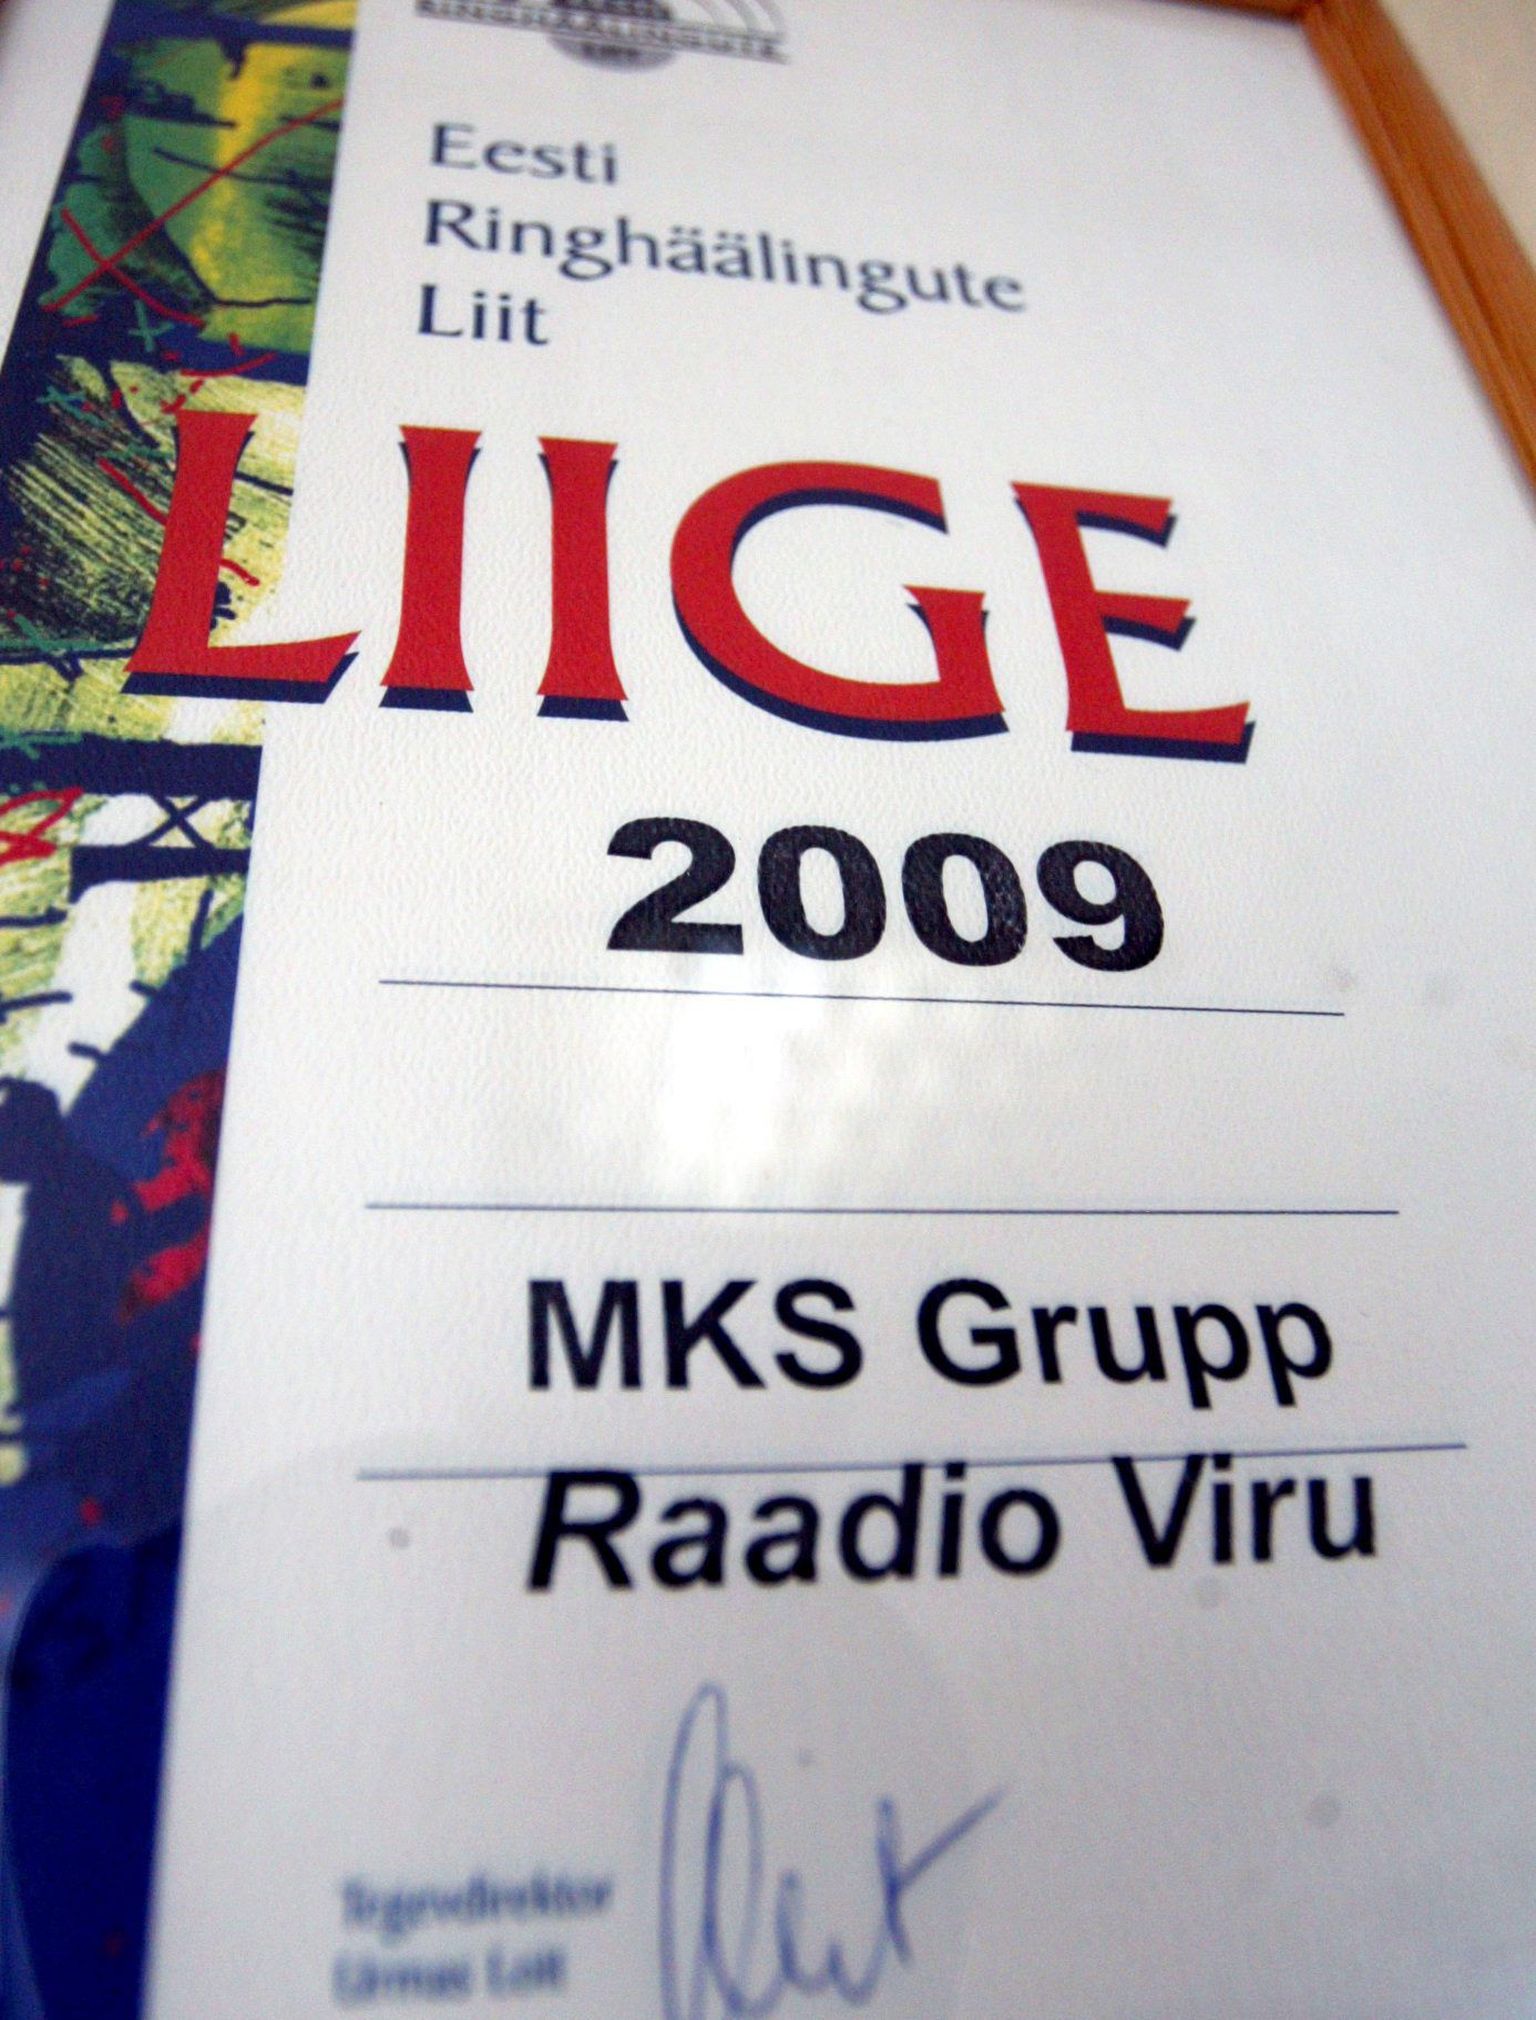 Raadio Viru oli Eesti ringhäälingute liidu liige.